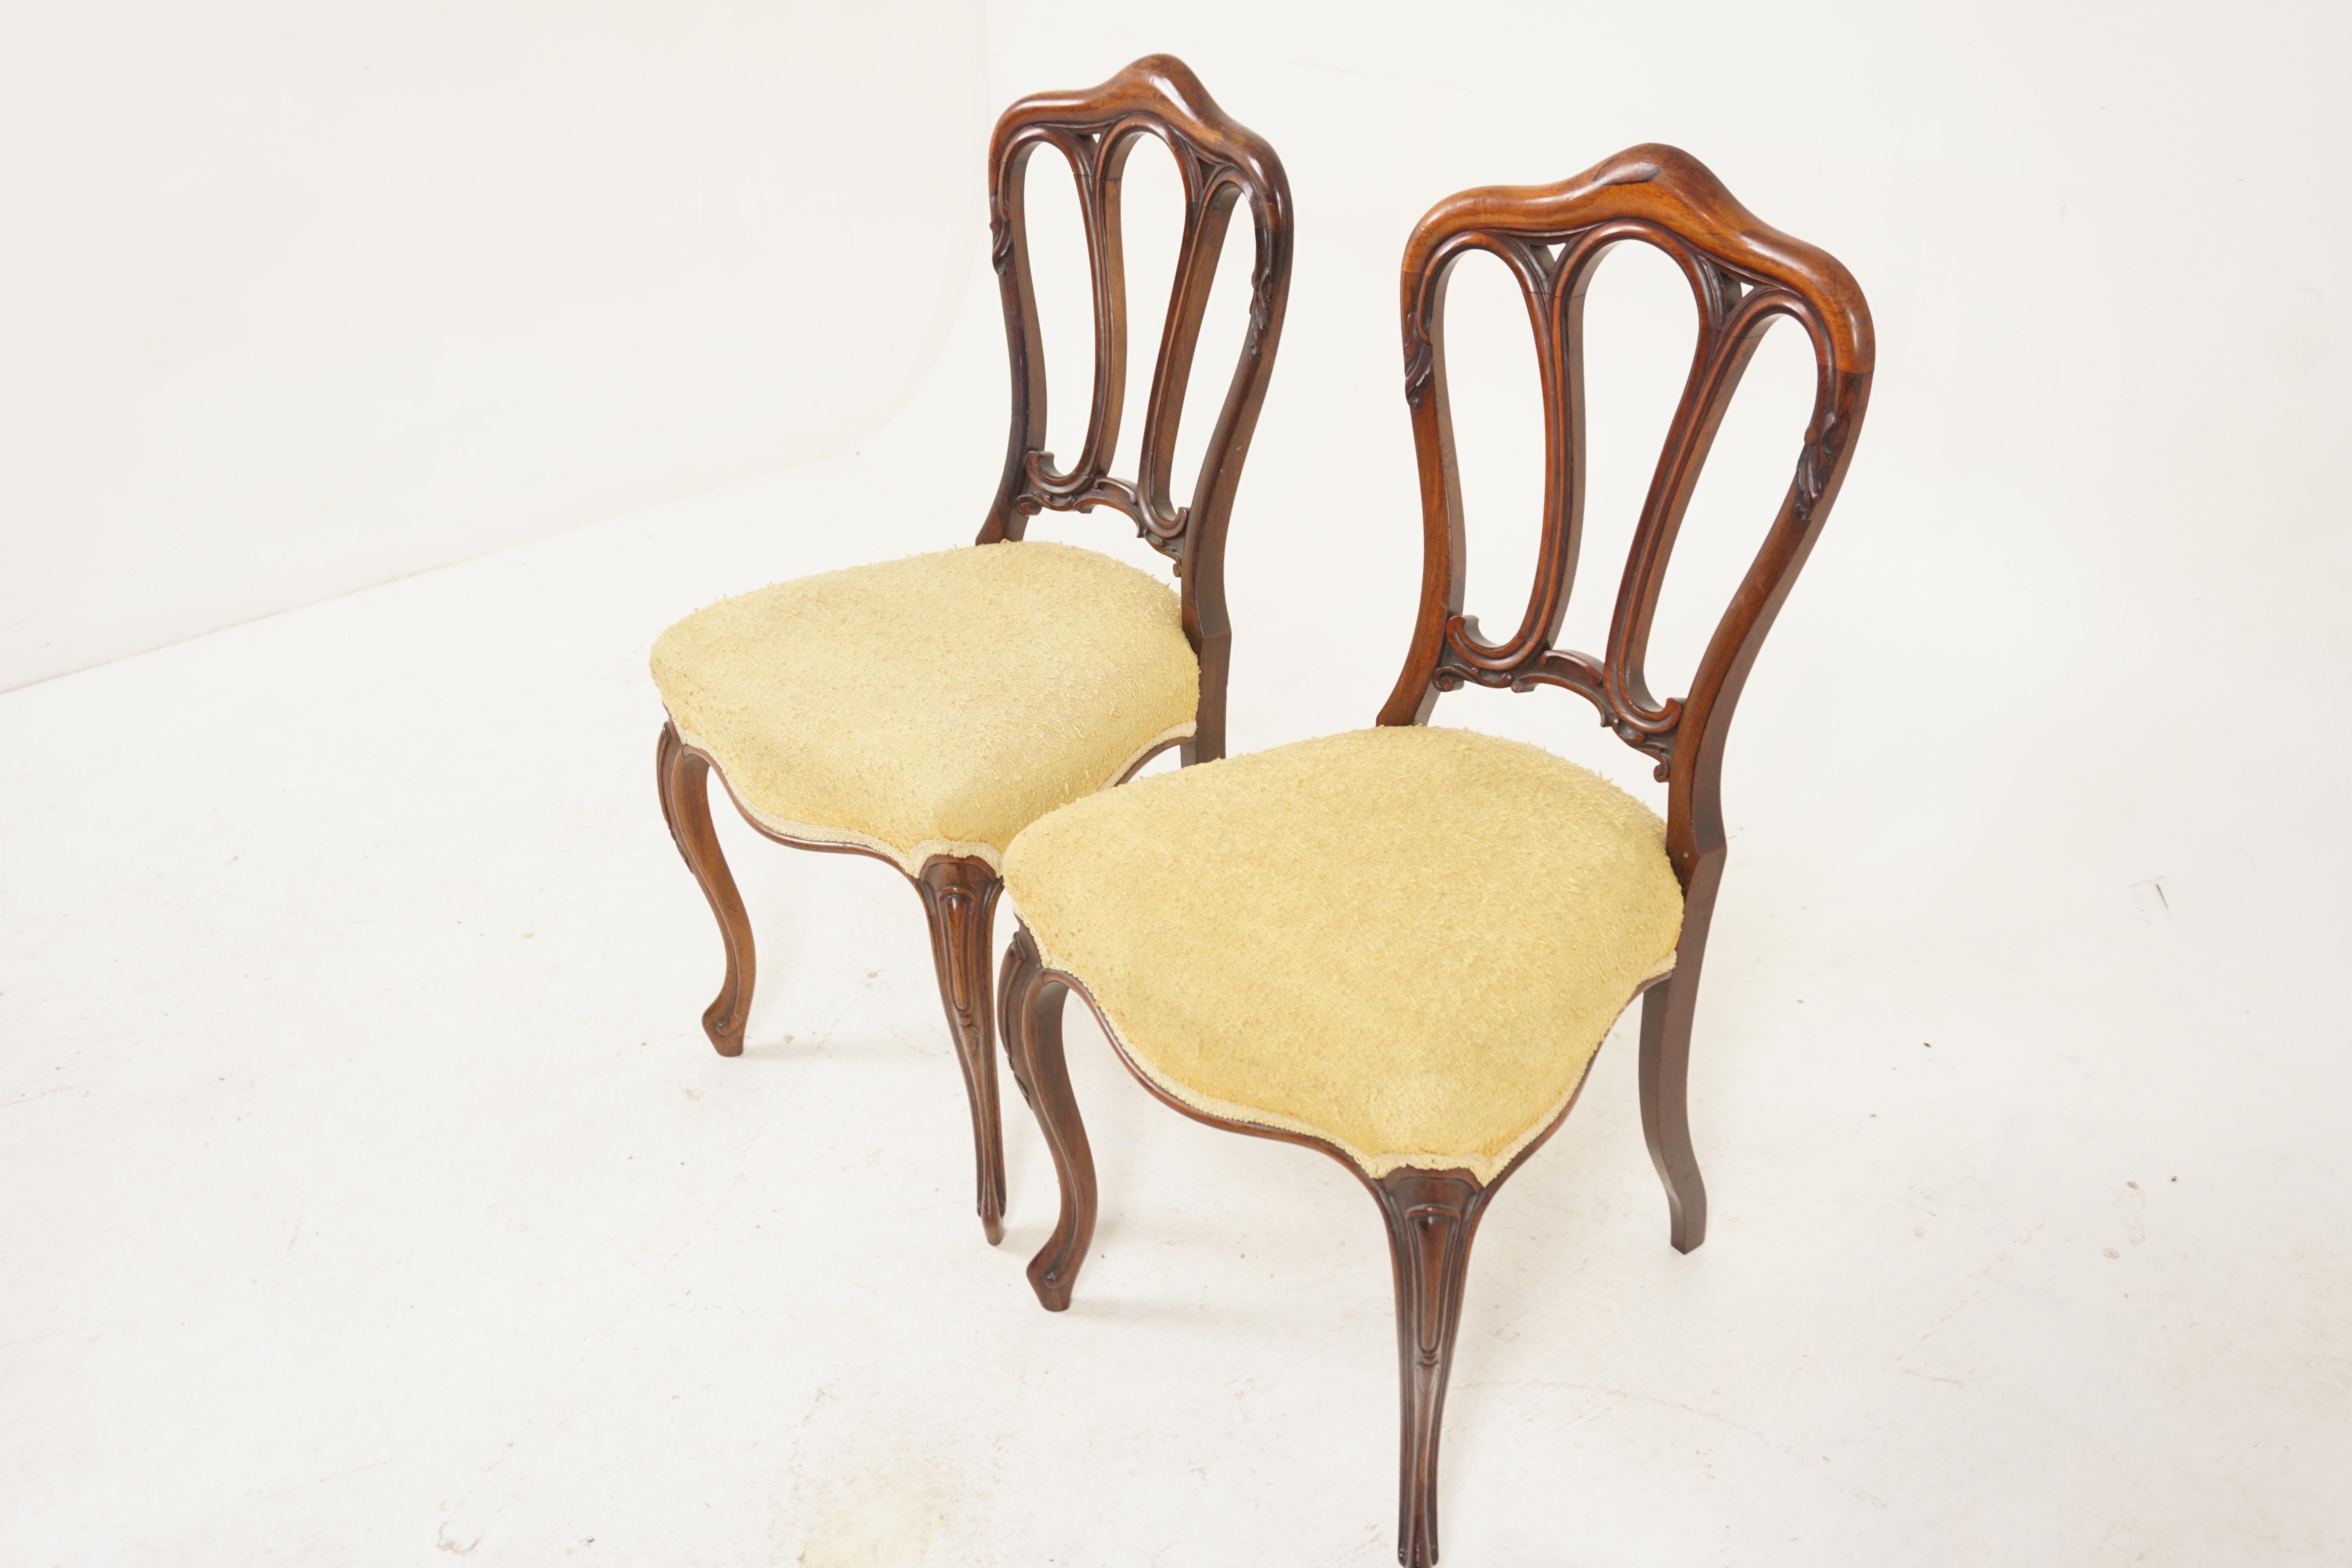 Paar viktorianische geschnitzte Stühle aus Rosenholz, Schottland 1860, H1165

Schottland 1860
Massivholz Palisander
Originale Ausführung
Die Stühle haben durchbrochene, geformte und geschnitzte Rückenlehnen
Große gepolsterte Sitze mit